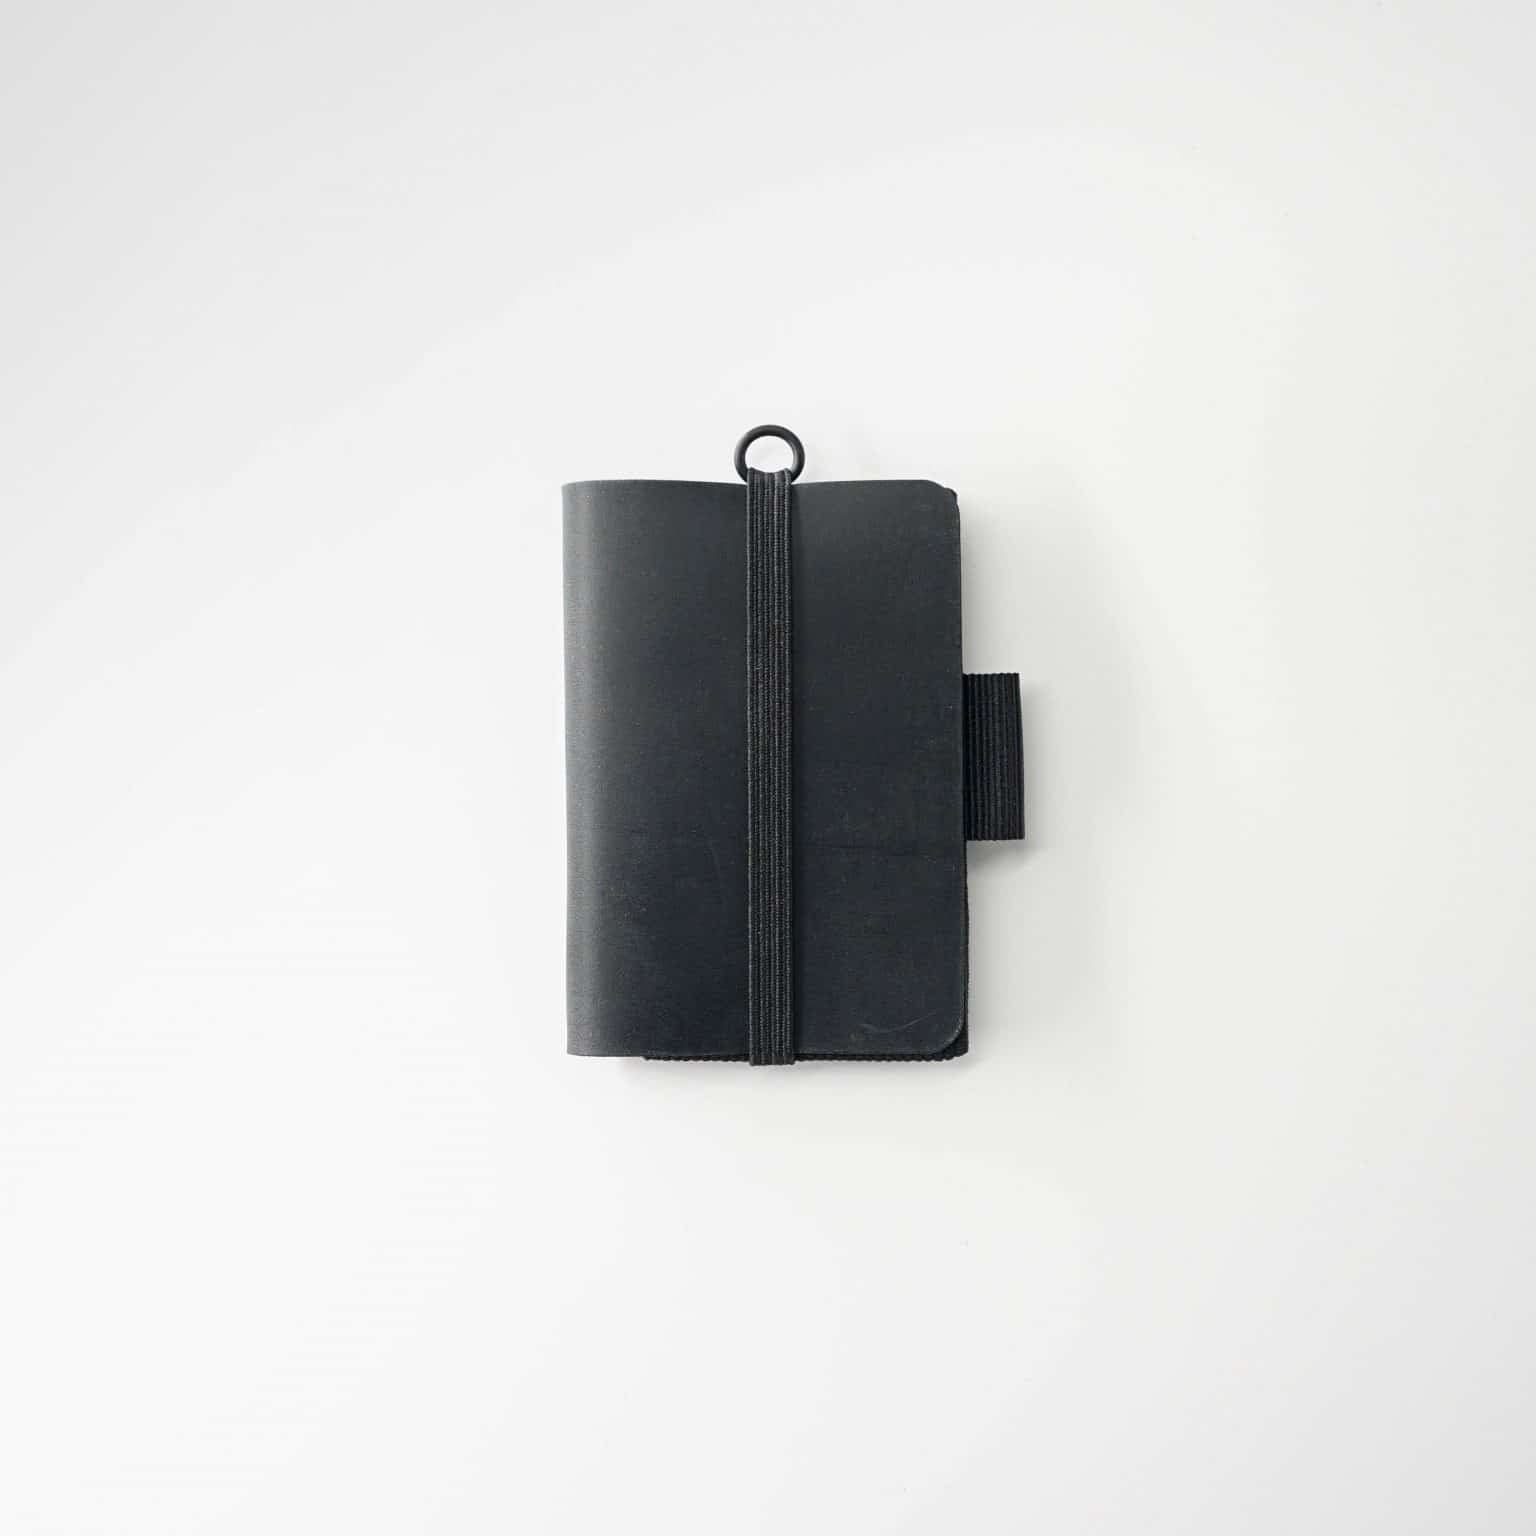 Portefeuille fin personnalisable adapté à votre style personnel.